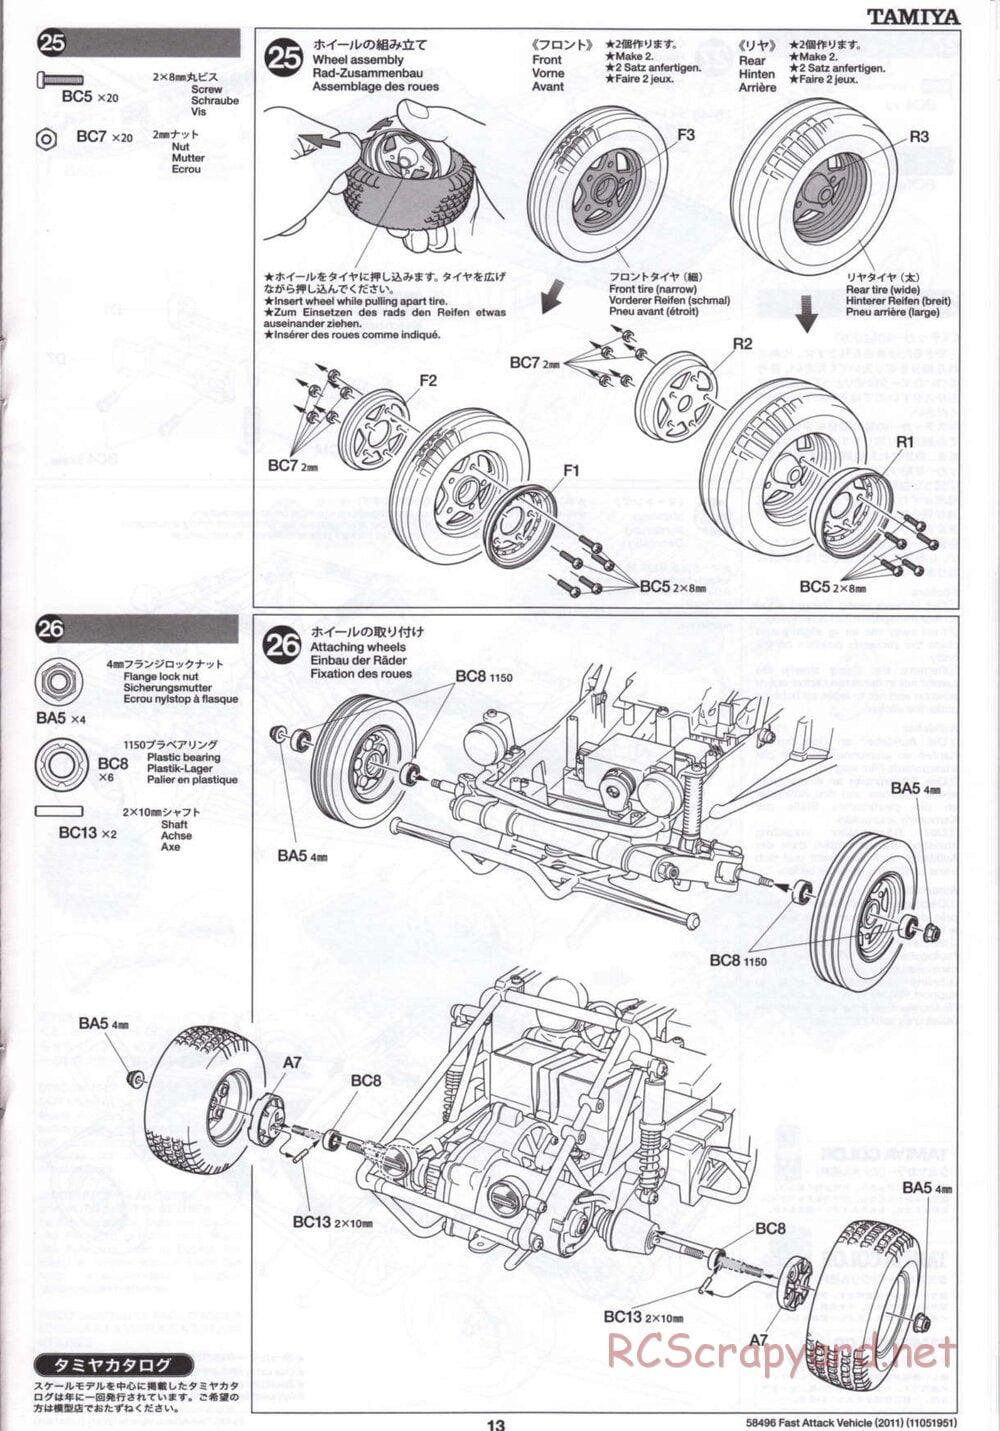 Tamiya - Fast Attack Vehicle 2011 - FAV Chassis - Manual - Page 13